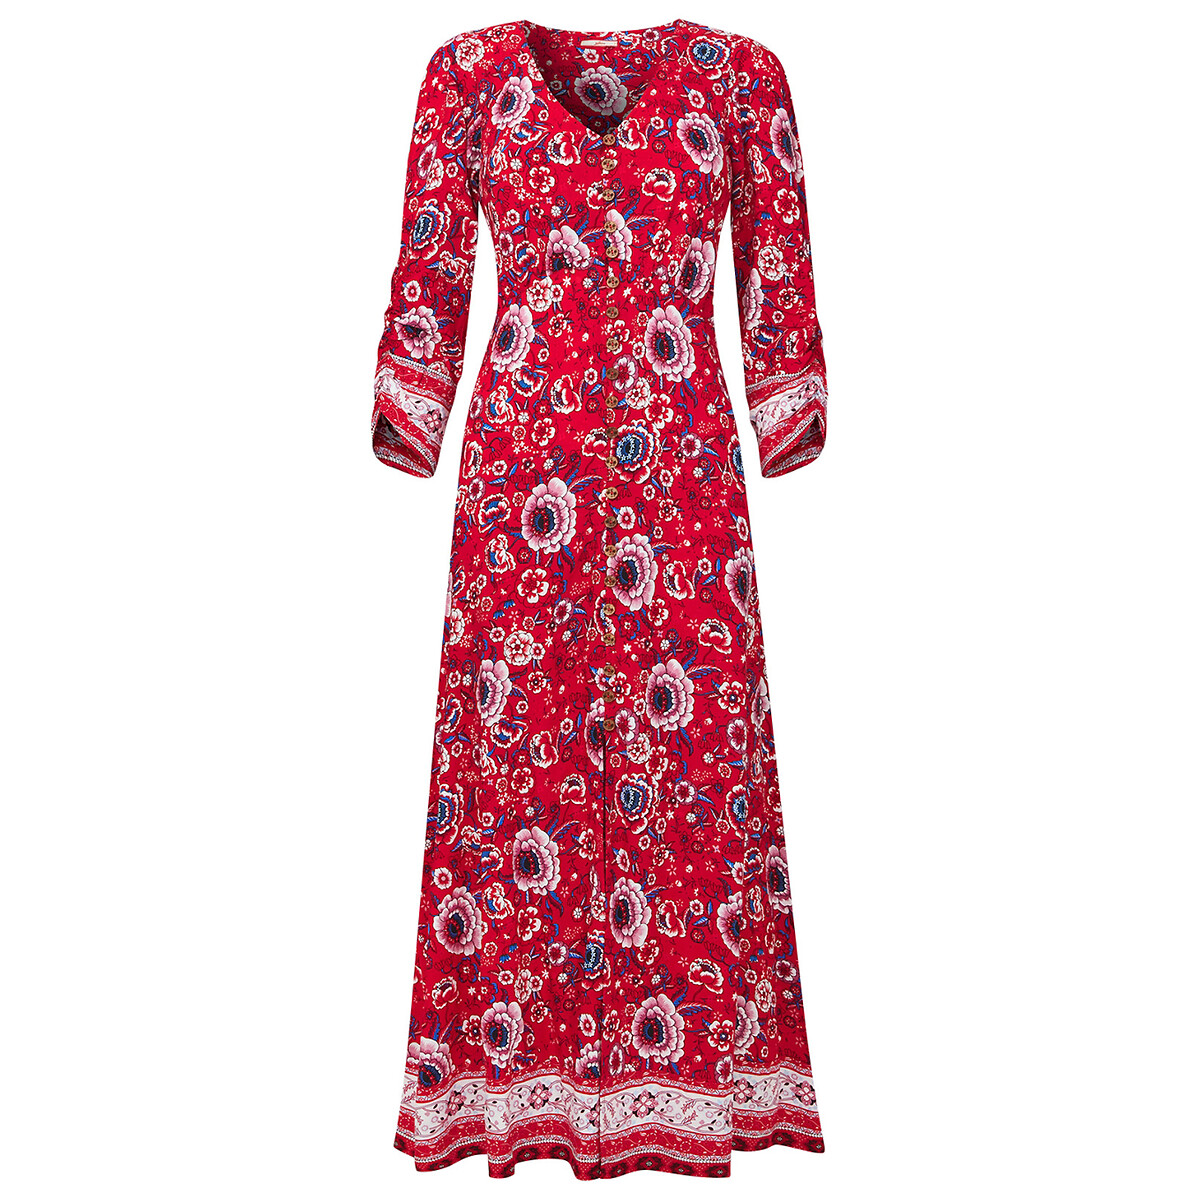 Платье JOE BROWNS Длинное с принтом и рукавами 34 48 красный, размер 48 - фото 5